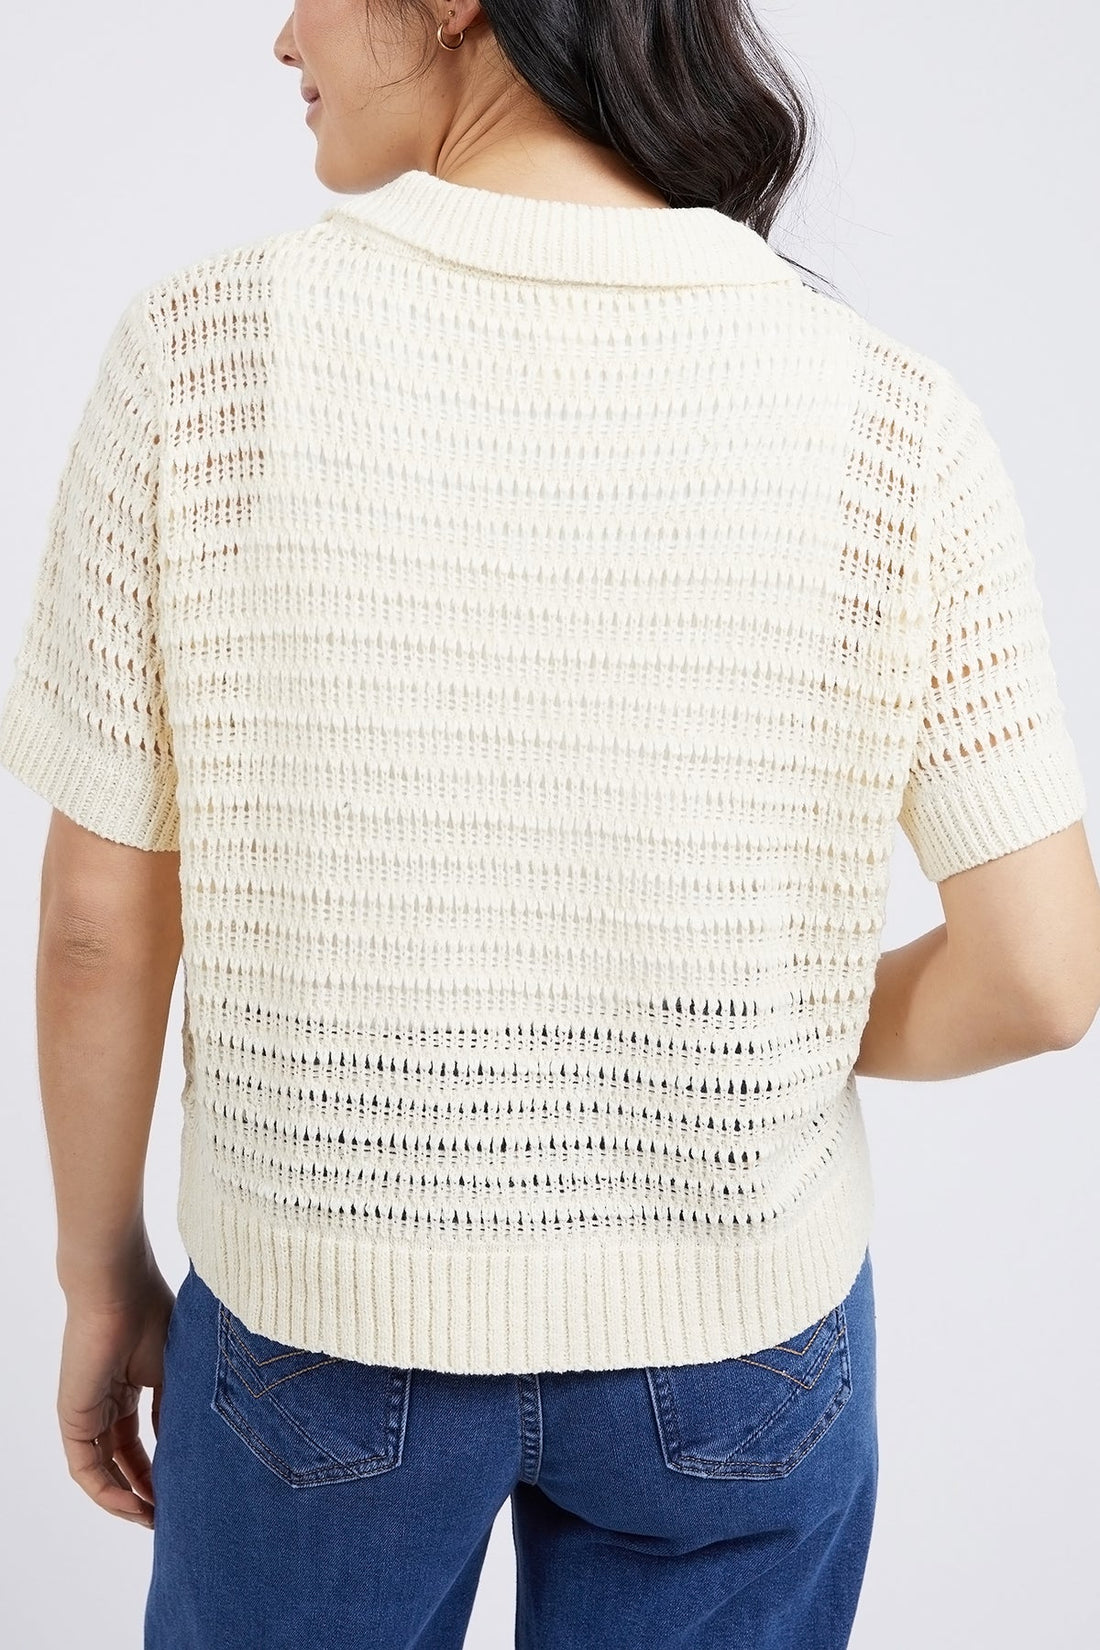 Bay Knit Shirt - Pearl